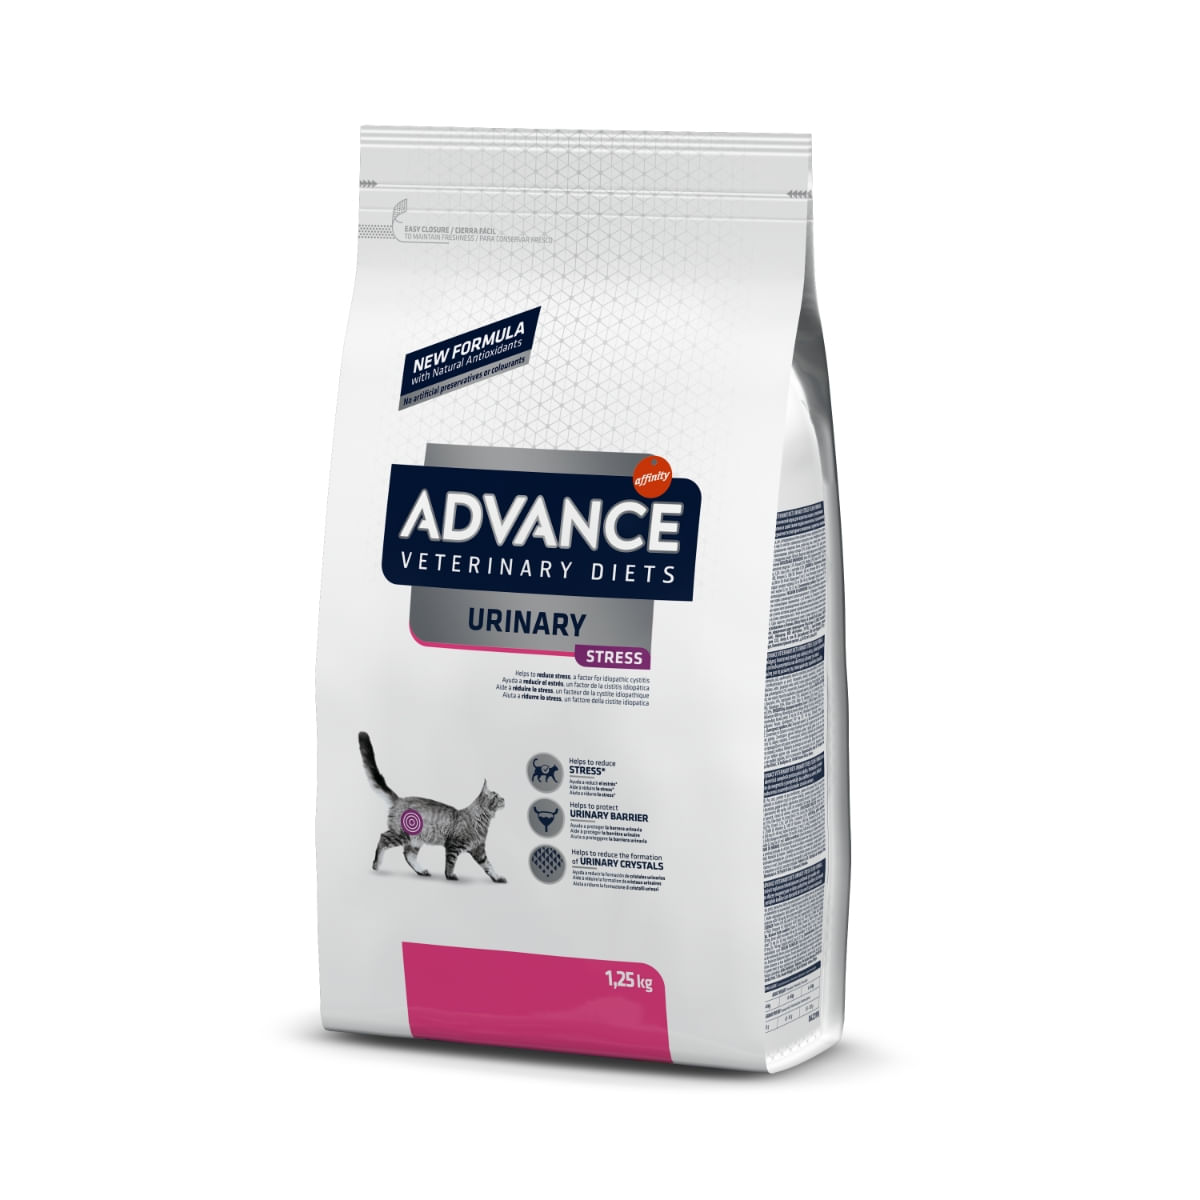 ADVANCE Veterinary Diets Cat Urinary Stress, dietă veterinară, hrană uscată pisici, afecțiuni urinare ADVANCE Veterinary Diets Urinary Stress, dietă veterinară pisici, hrană uscată, sistem urinar, 1.25kg